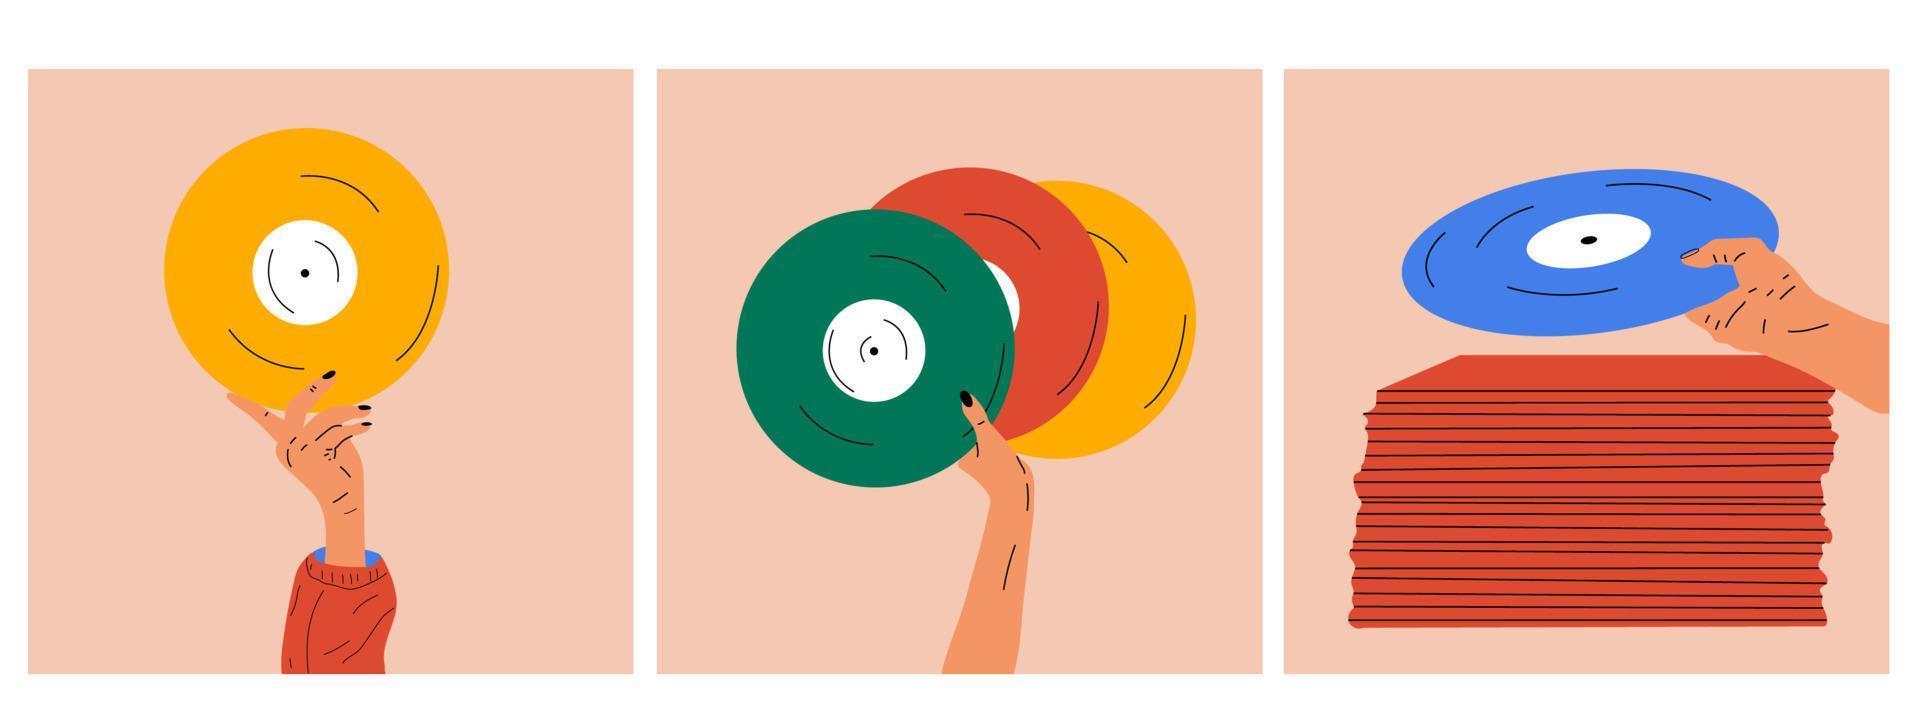 conjunto de tres ilustraciones mano sostiene un viejo disco de vinilo en sus manos .estilo de moda retro de los años 80. ilustraciones vectoriales en colores de moda. vector